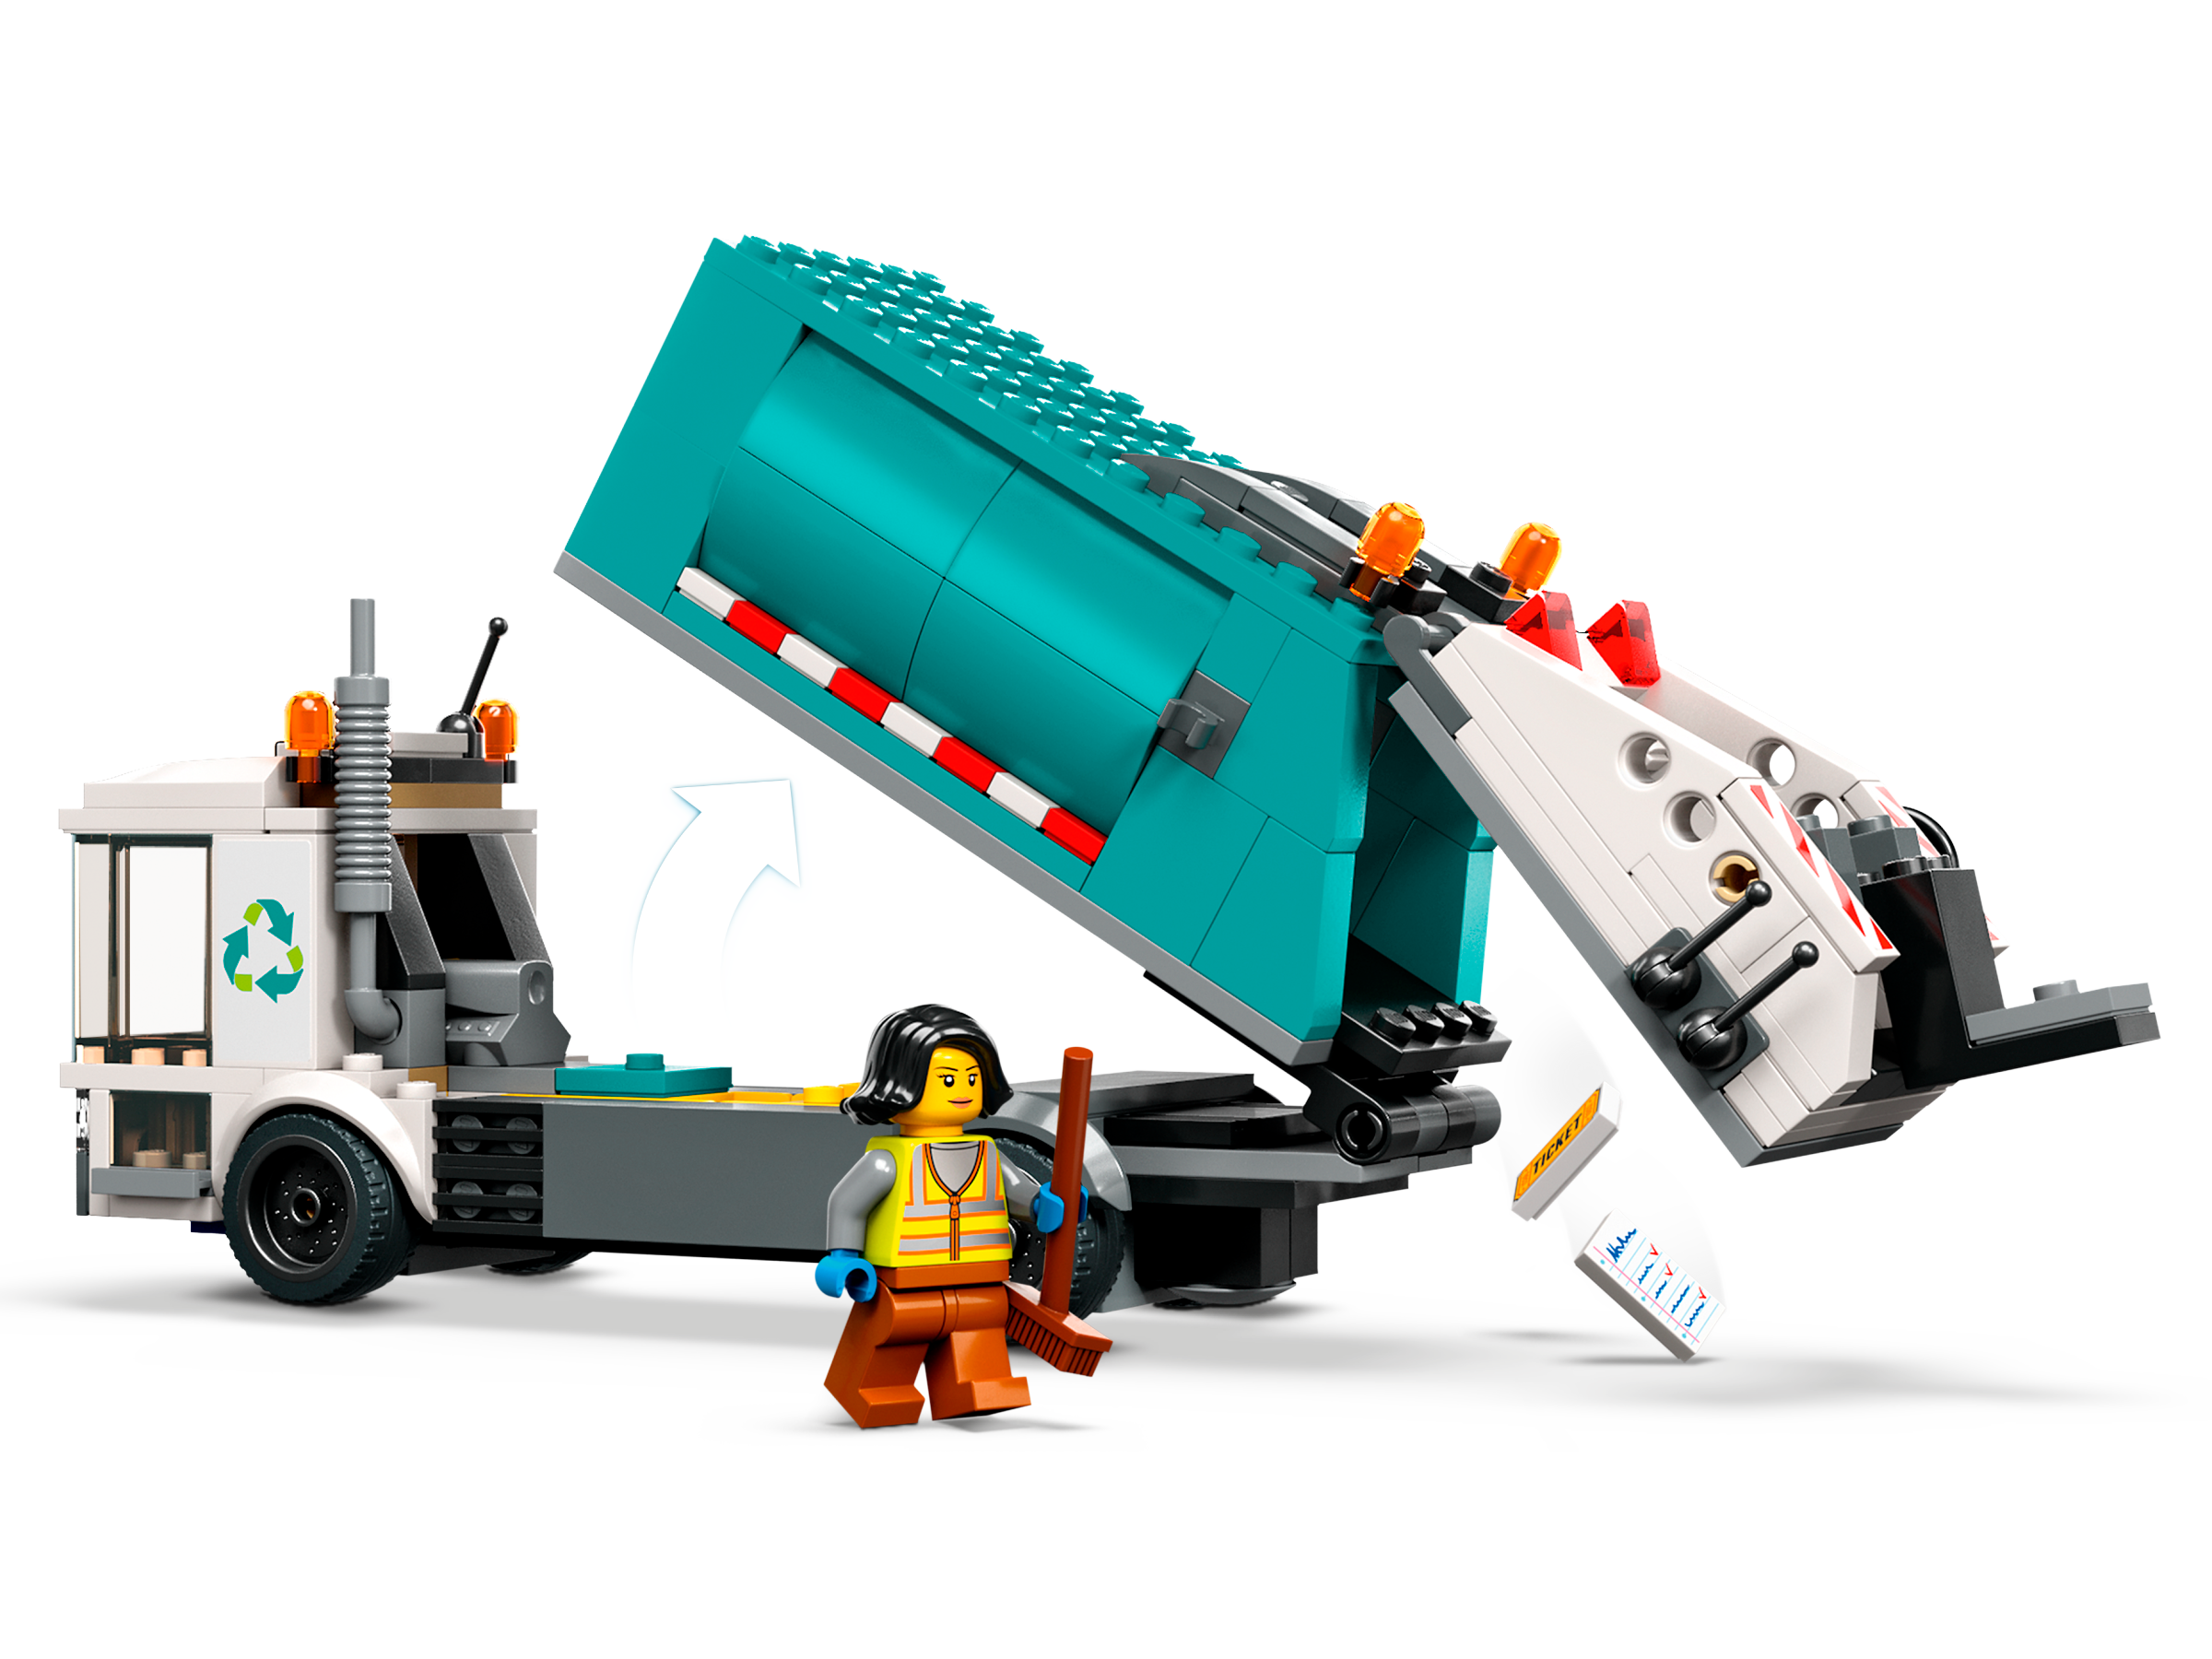 Lego City - Camion de recyclage